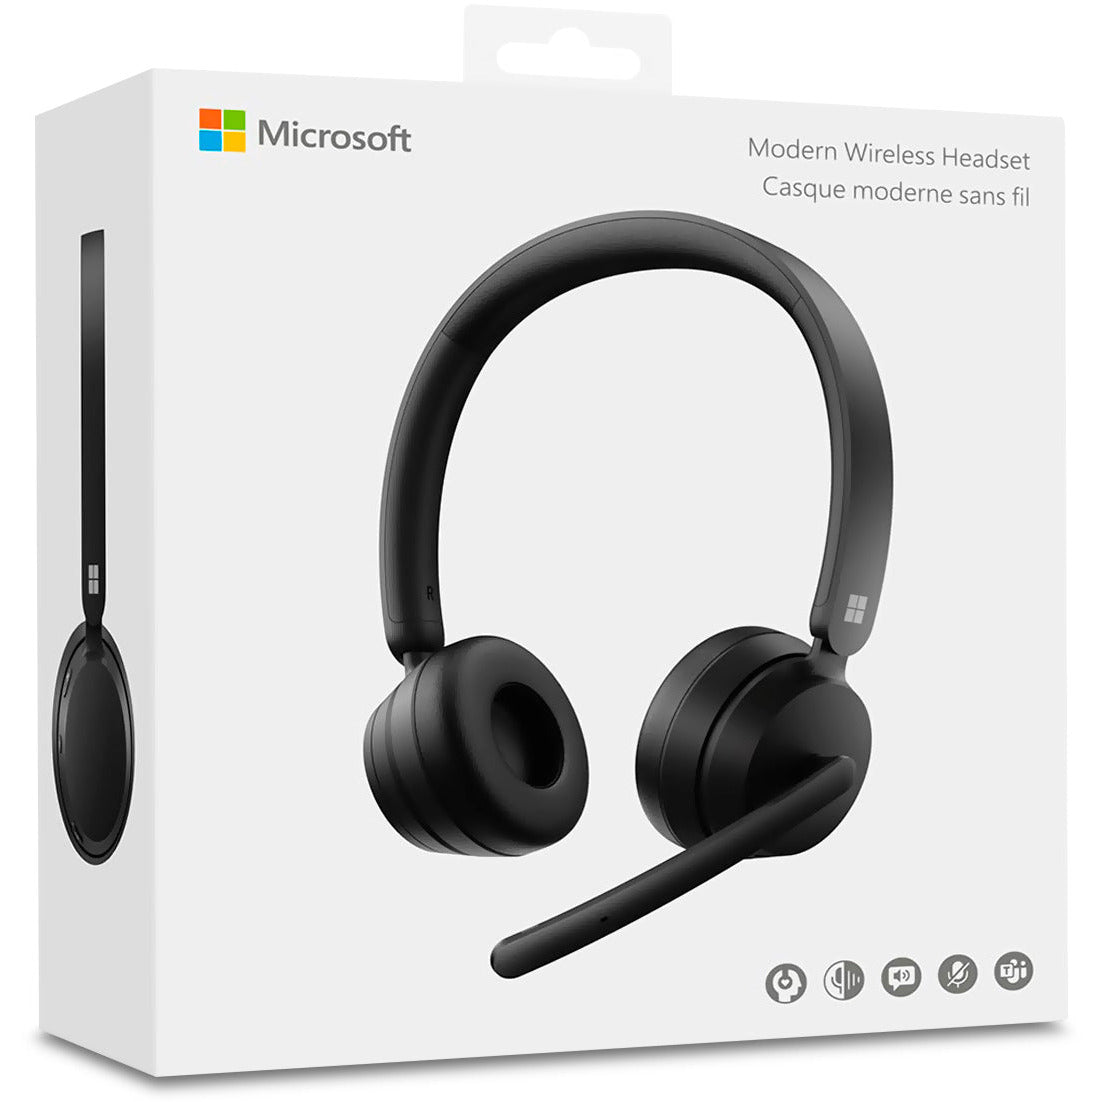 Microsoft Modern Wireless Headset: Teams Certified, on-ear